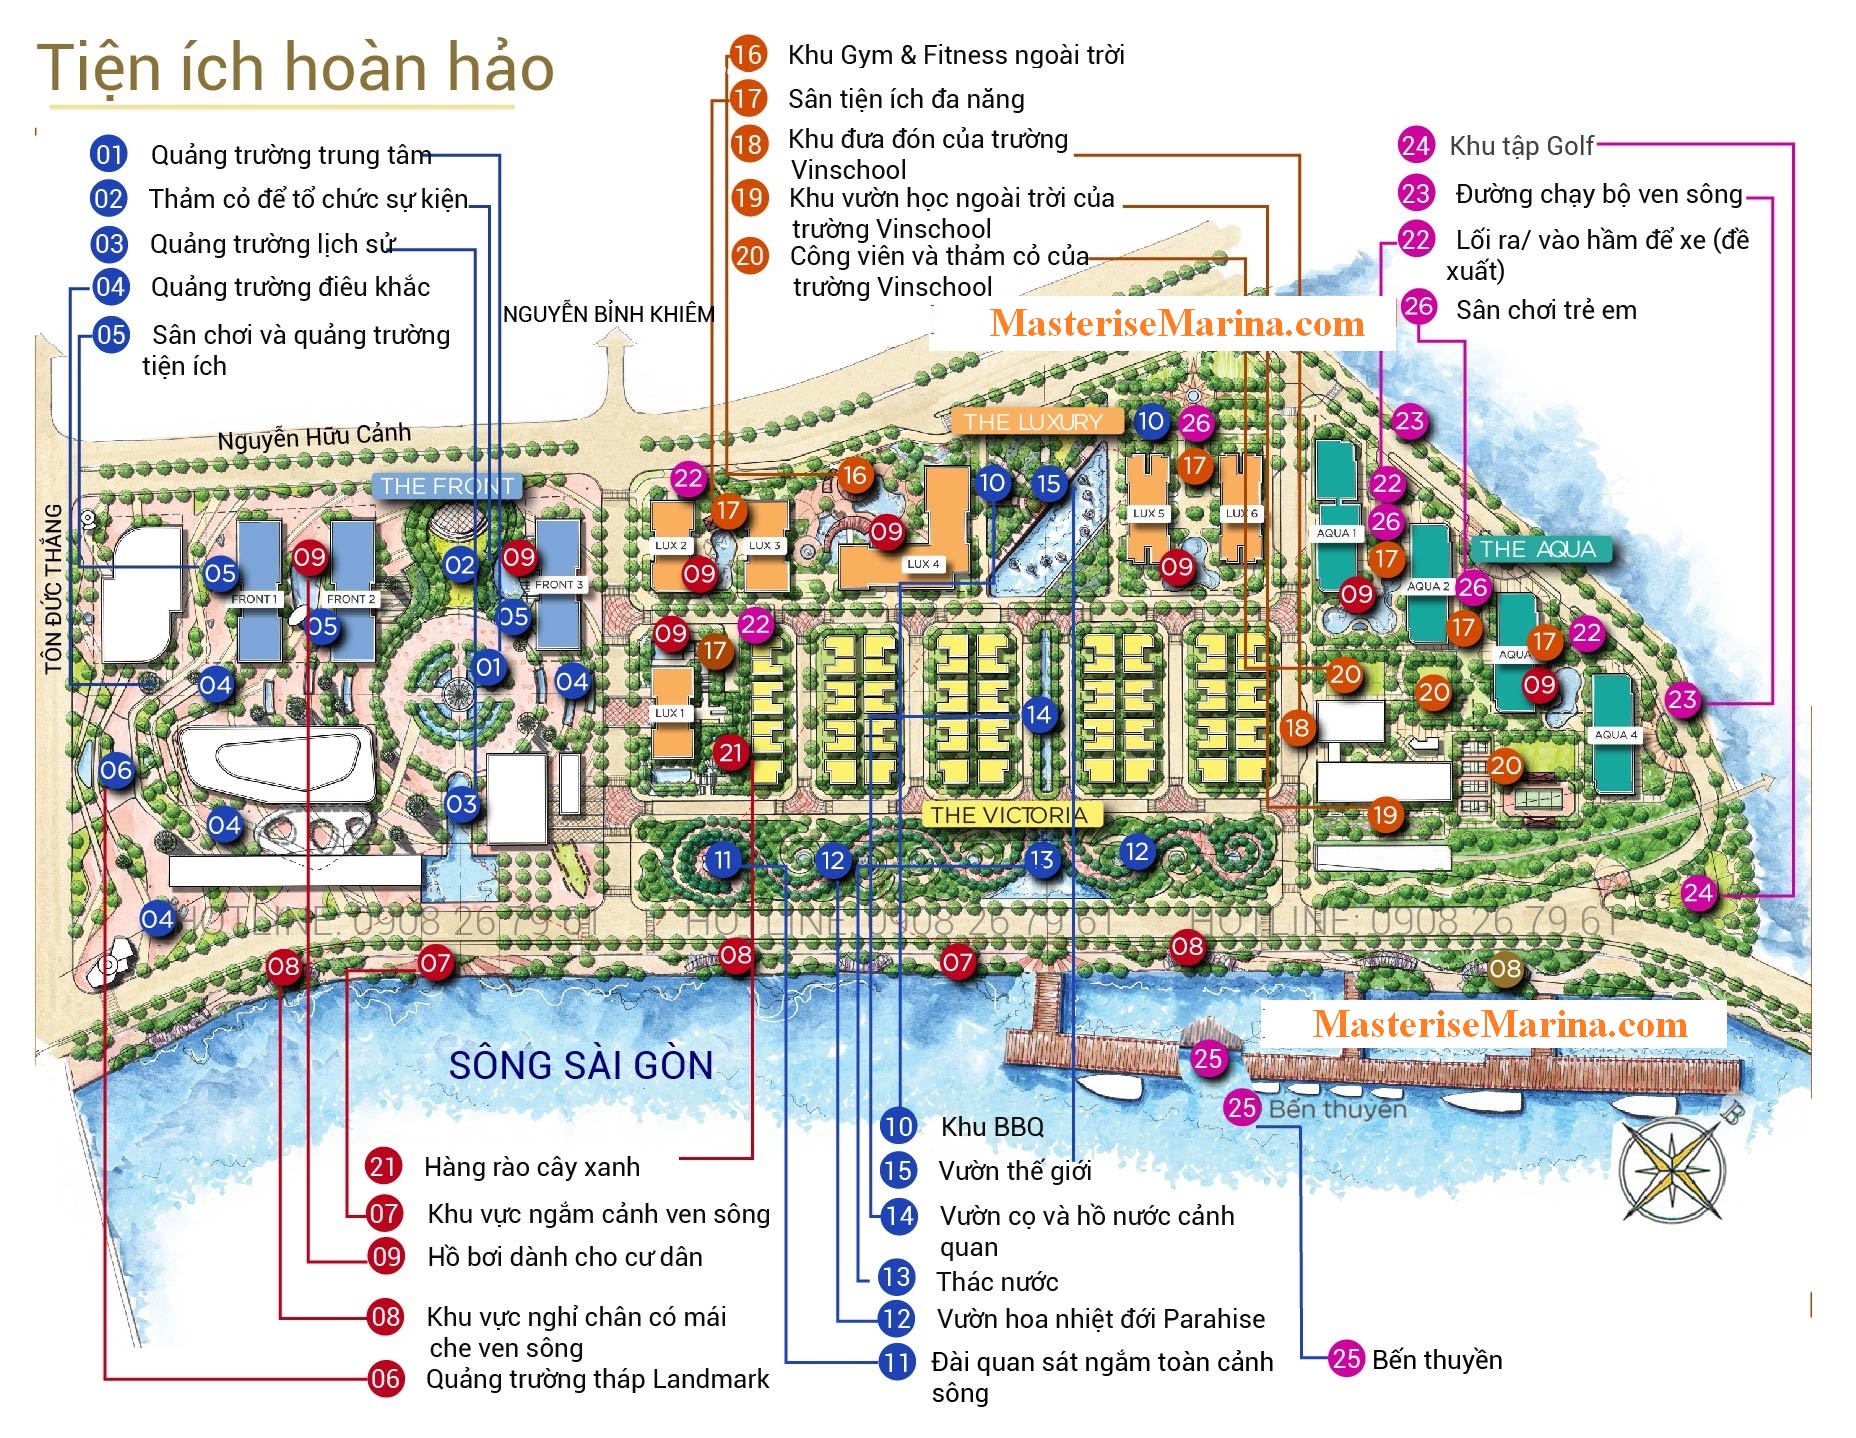 Dự án Grand Marina Saigon mang đến những tiện ích tuyệt vời